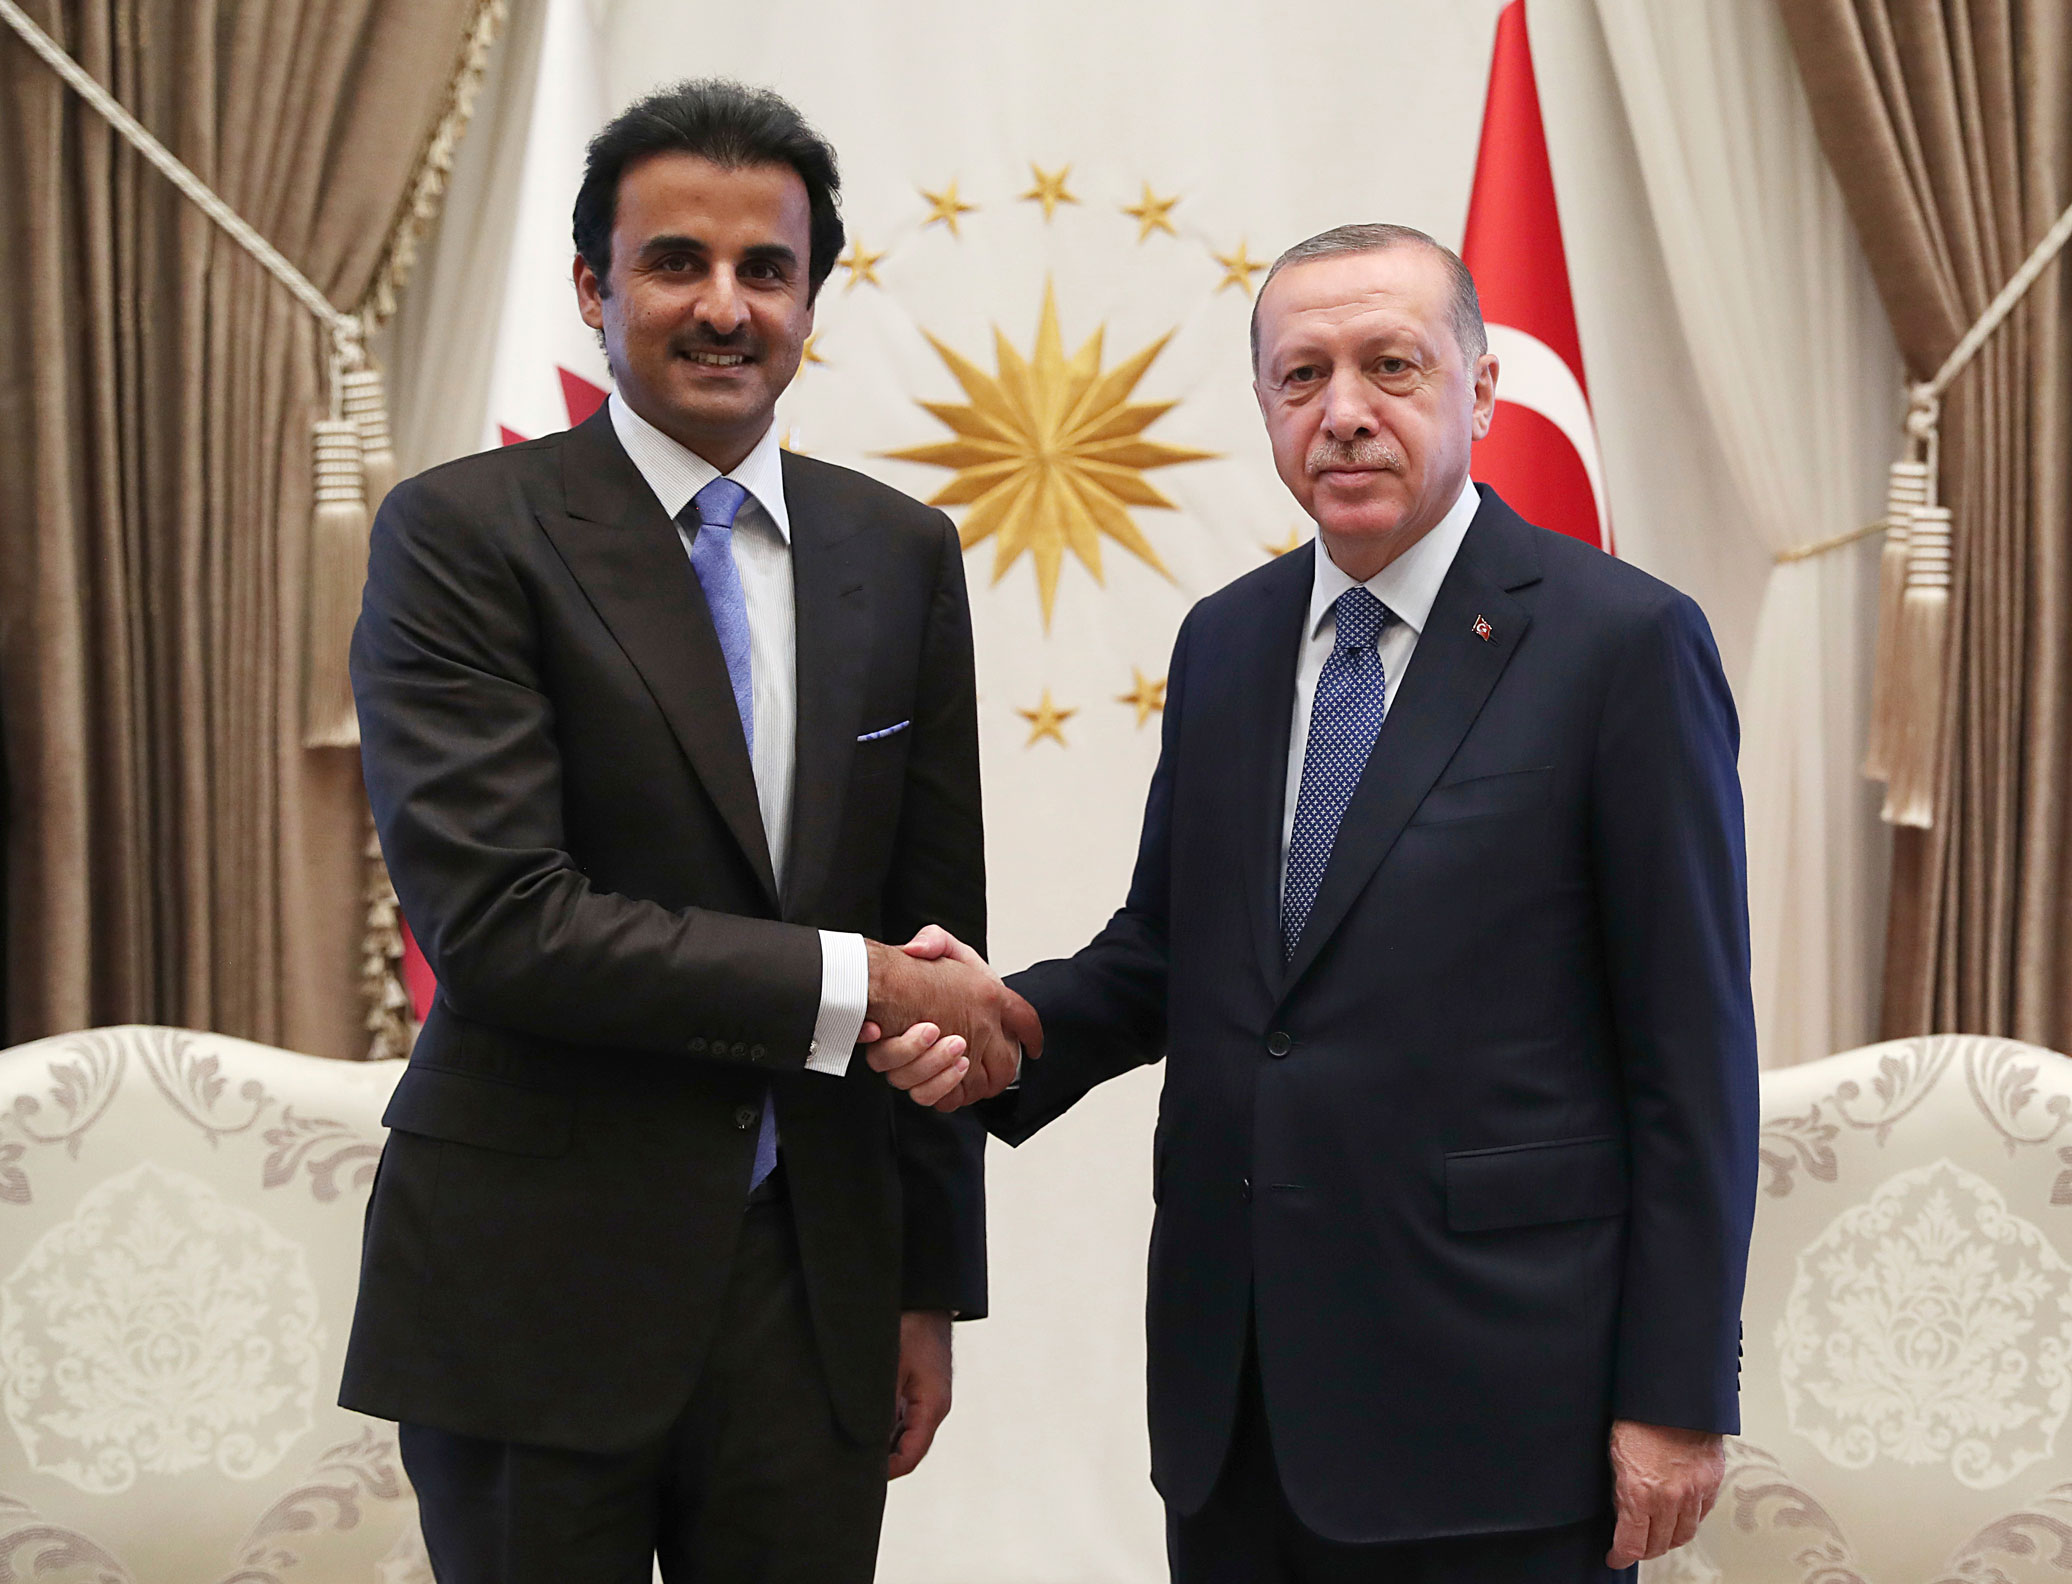 الرئيس التركي رجب طيب اردوغان يصافح ضيفه أمير قطر الشيخ تميم بن حمد ببرود